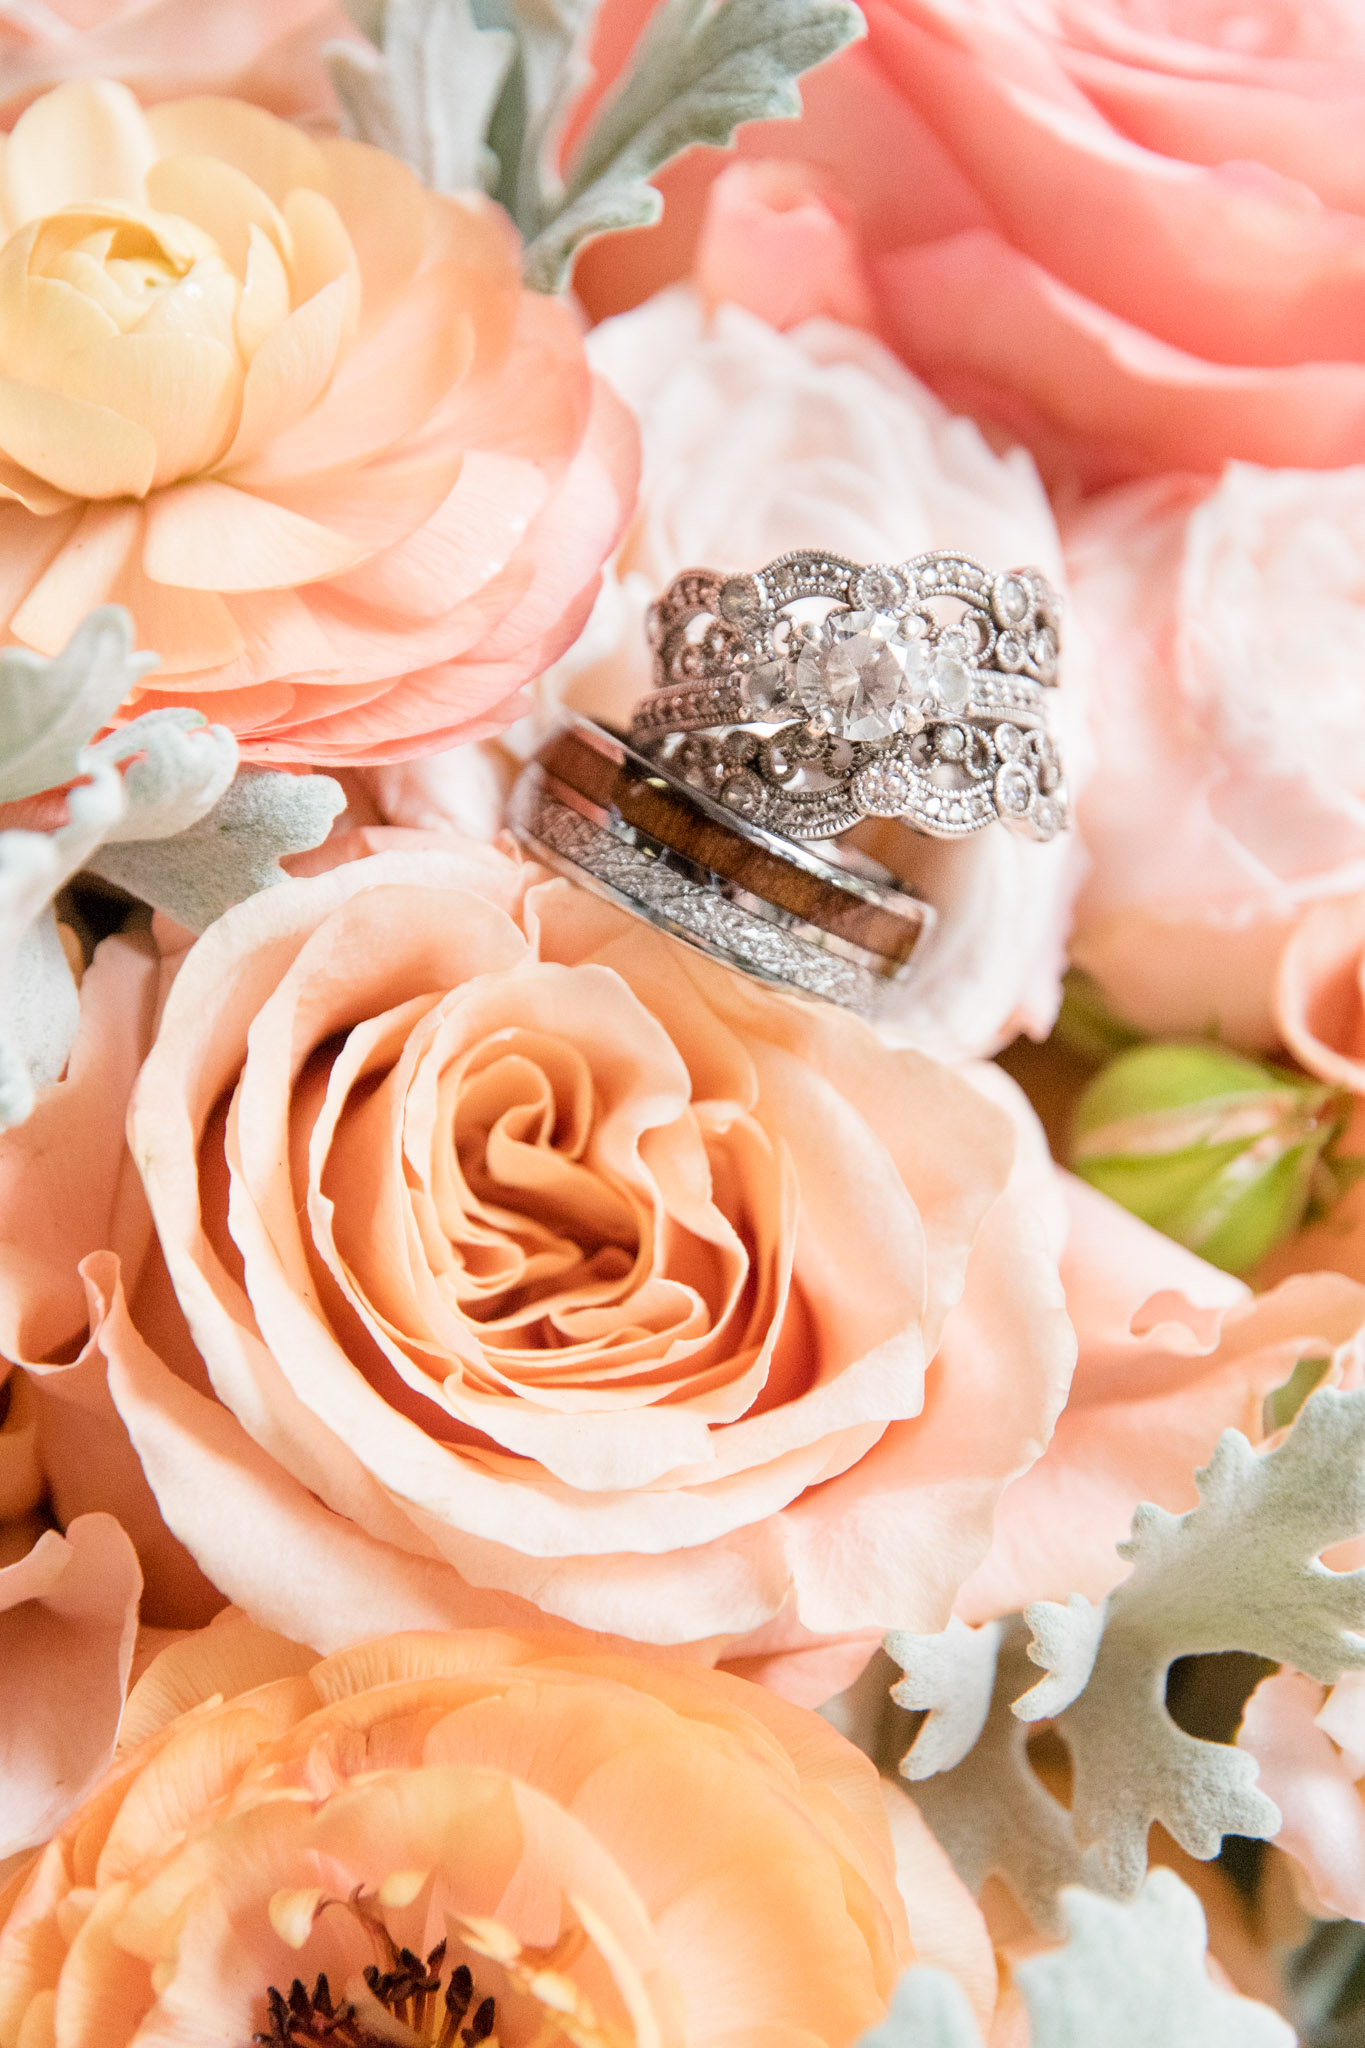 Wedding rings sit on flowers.